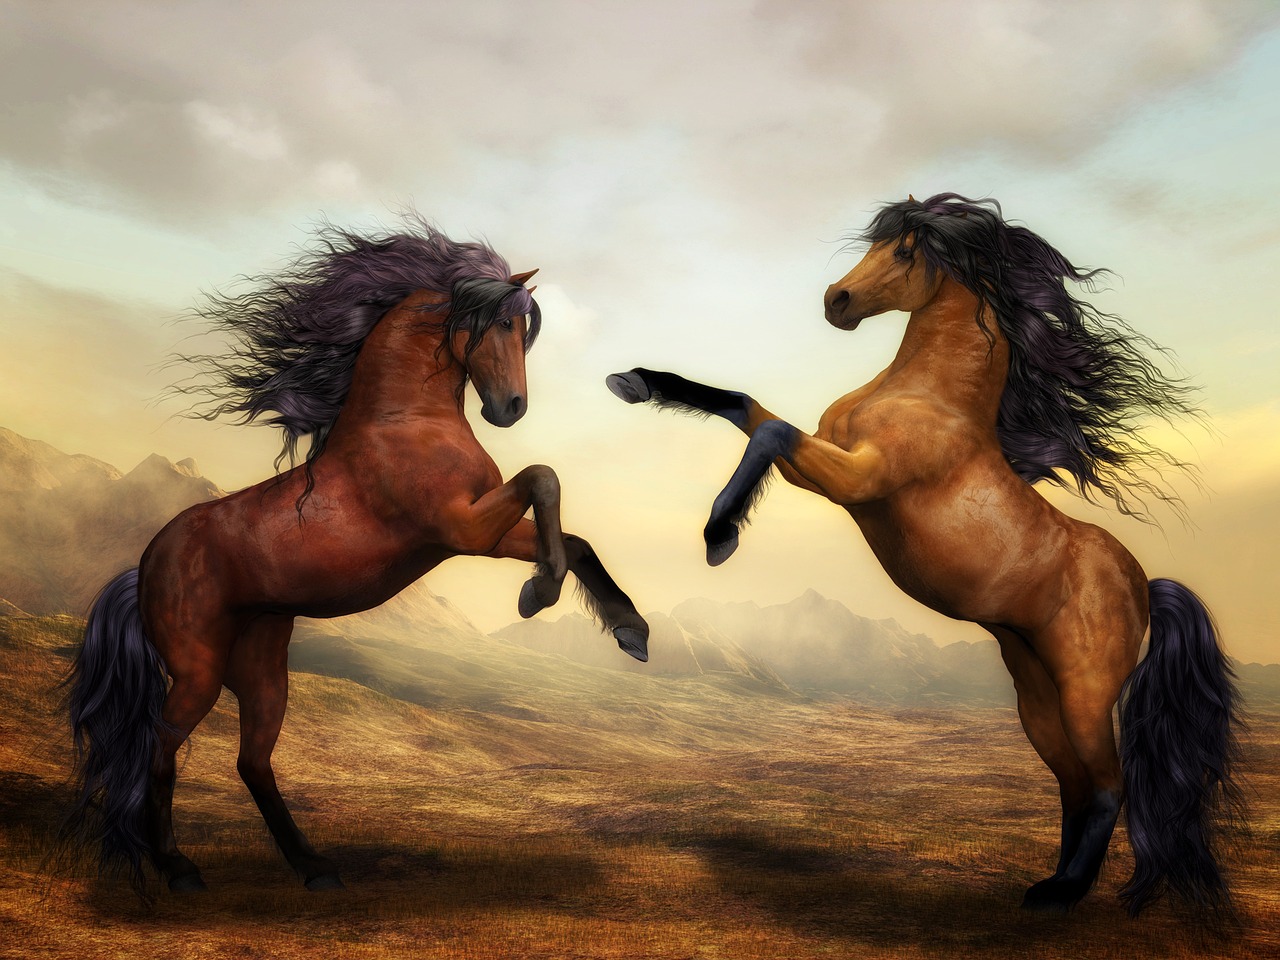 Free Wild Horse & Horse Image